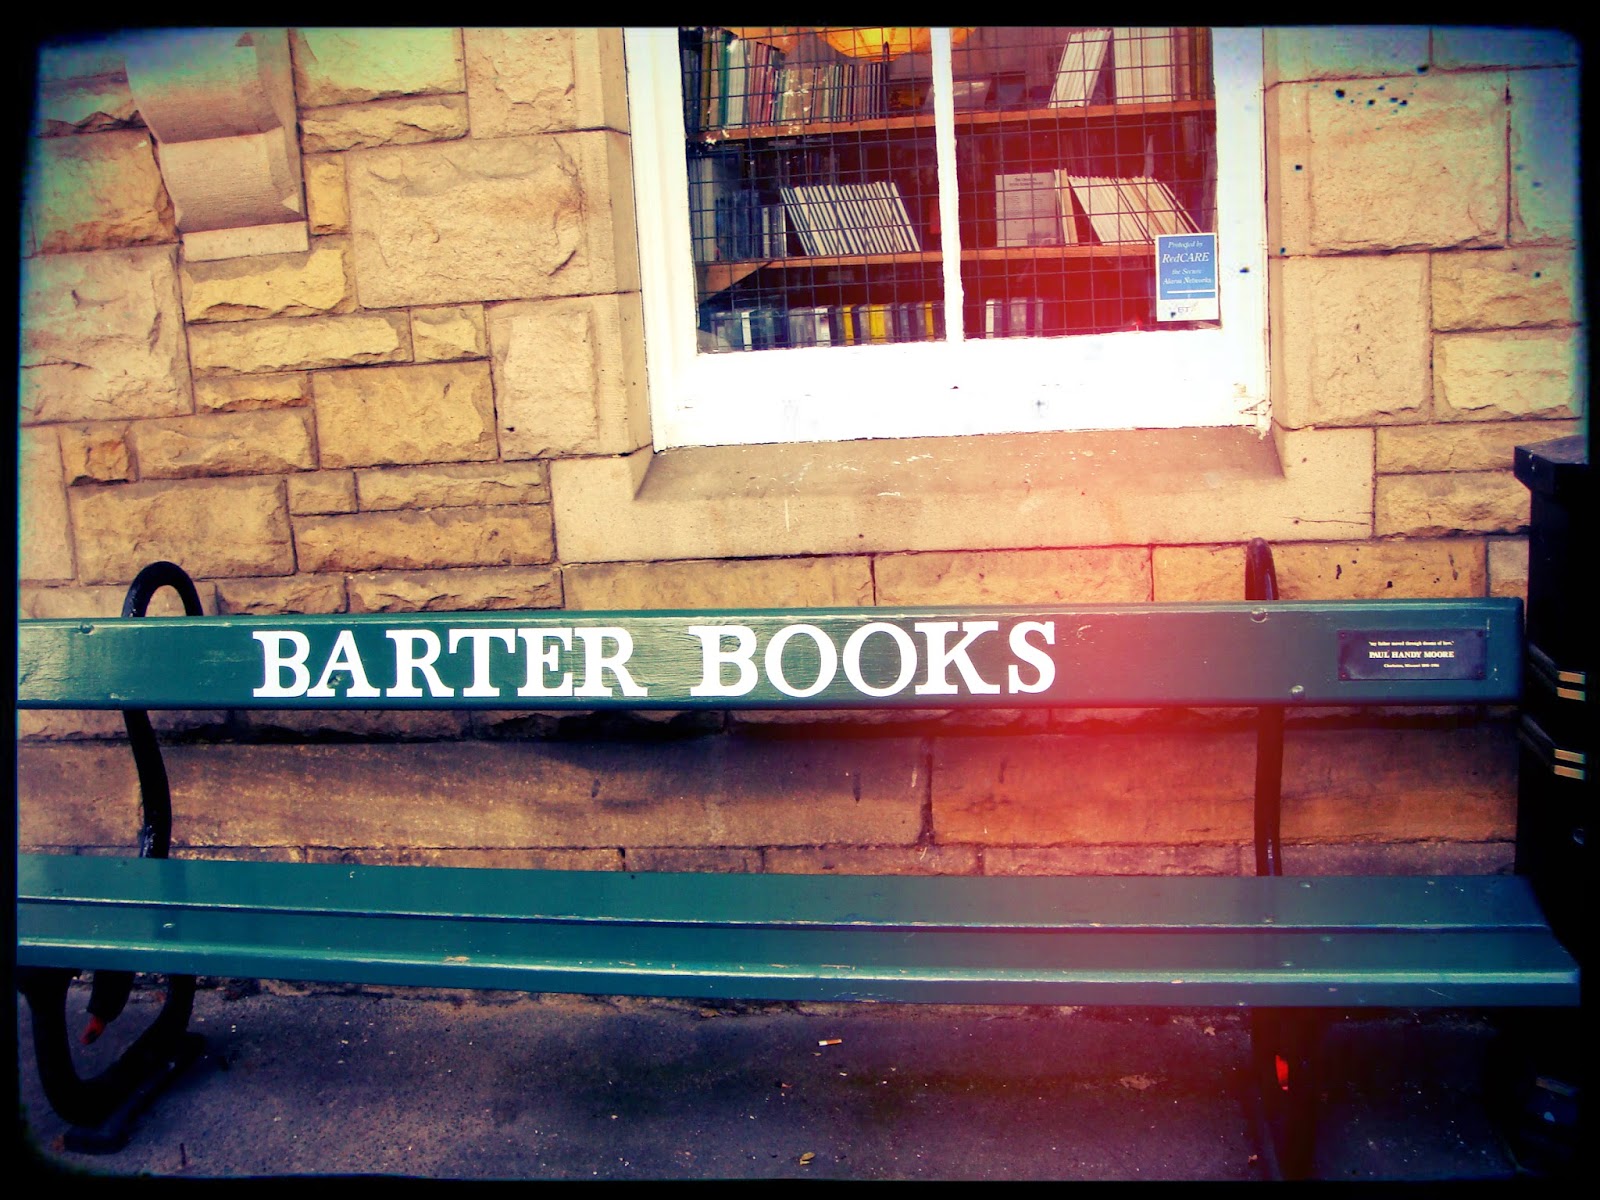 Barter Books